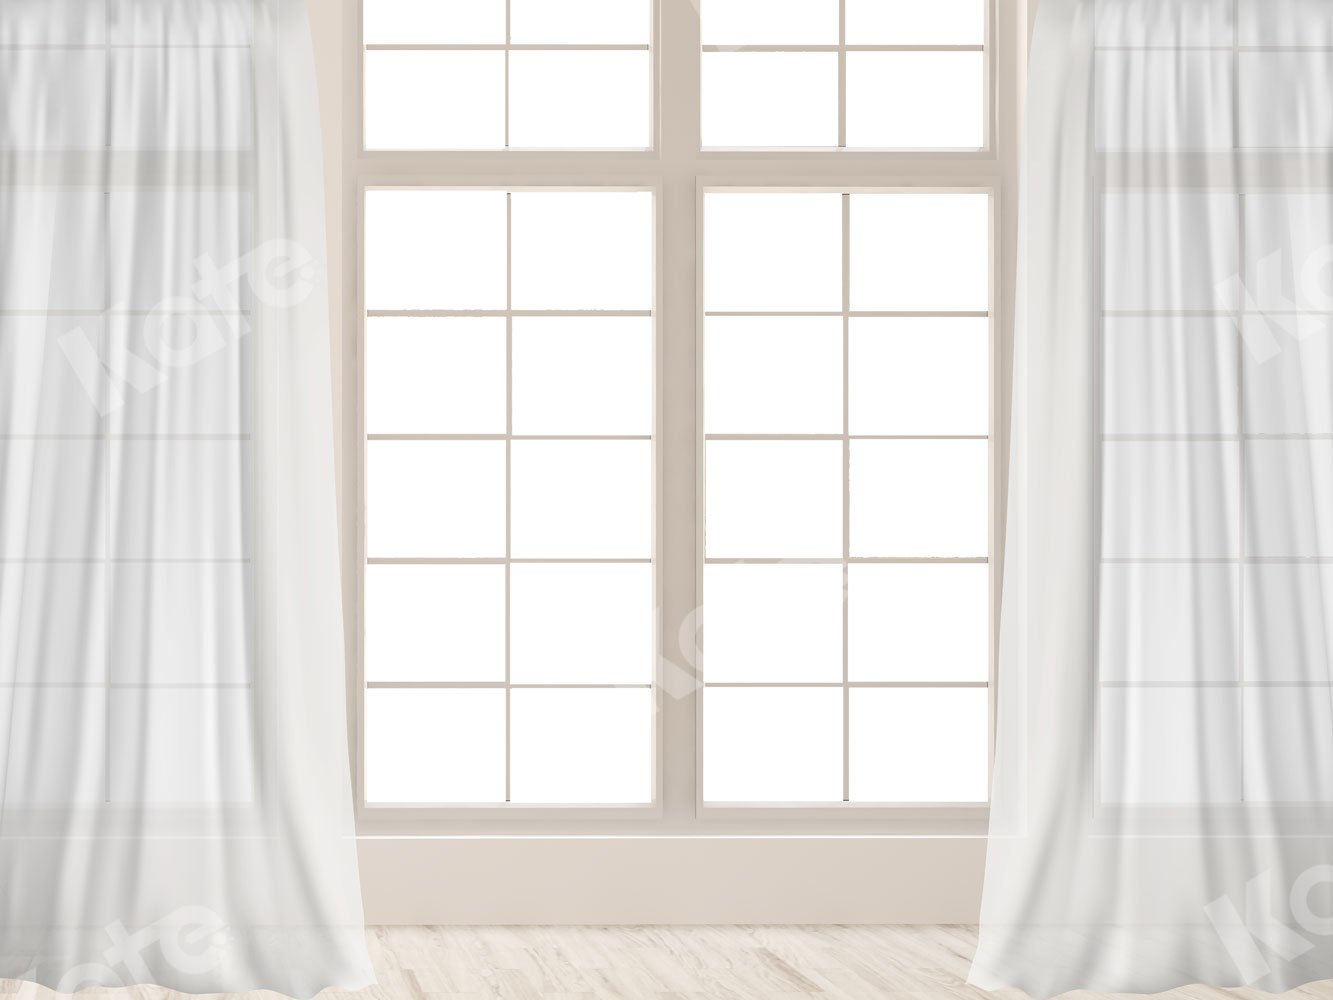 Kate Weißer Fenster weiß Vorhang Hintergrund für Fotografie